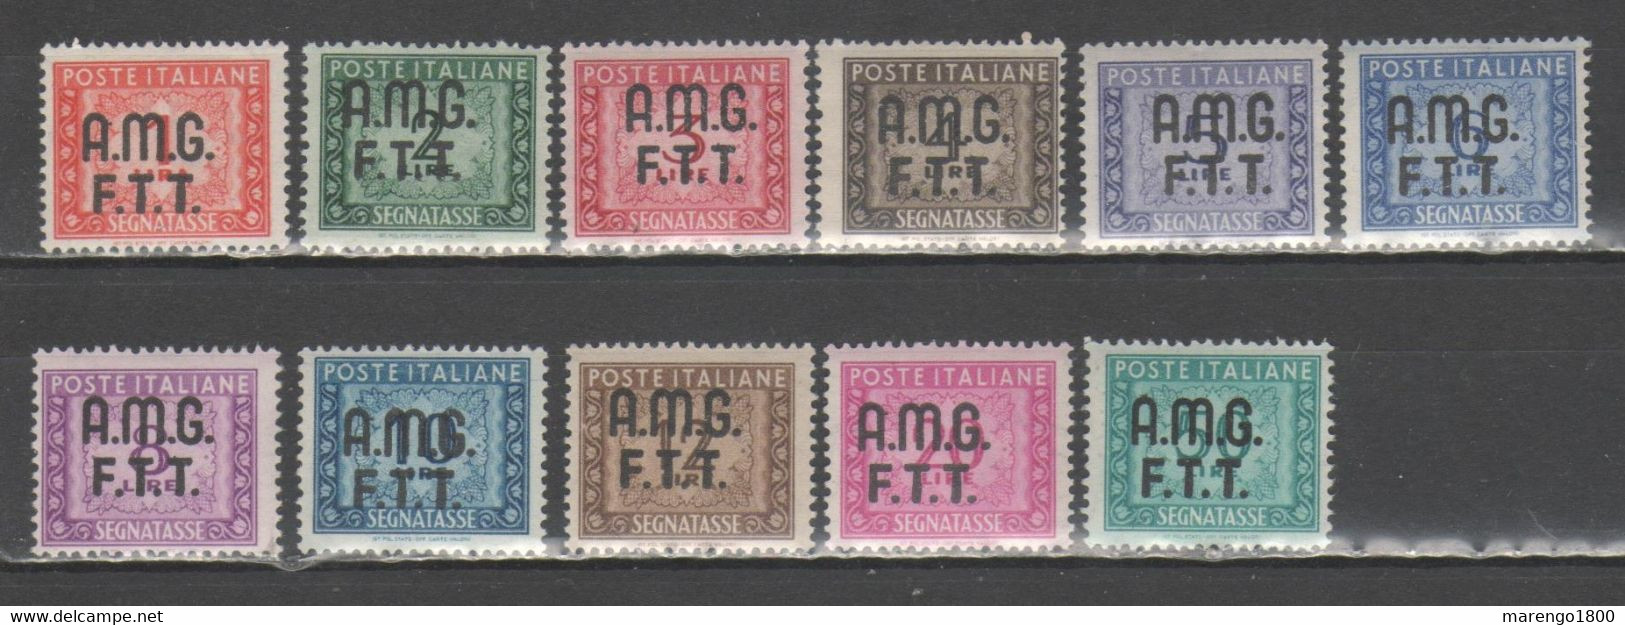 Amg-Ftt 1947-49 - Segnatasse **           (g8182) - Strafport